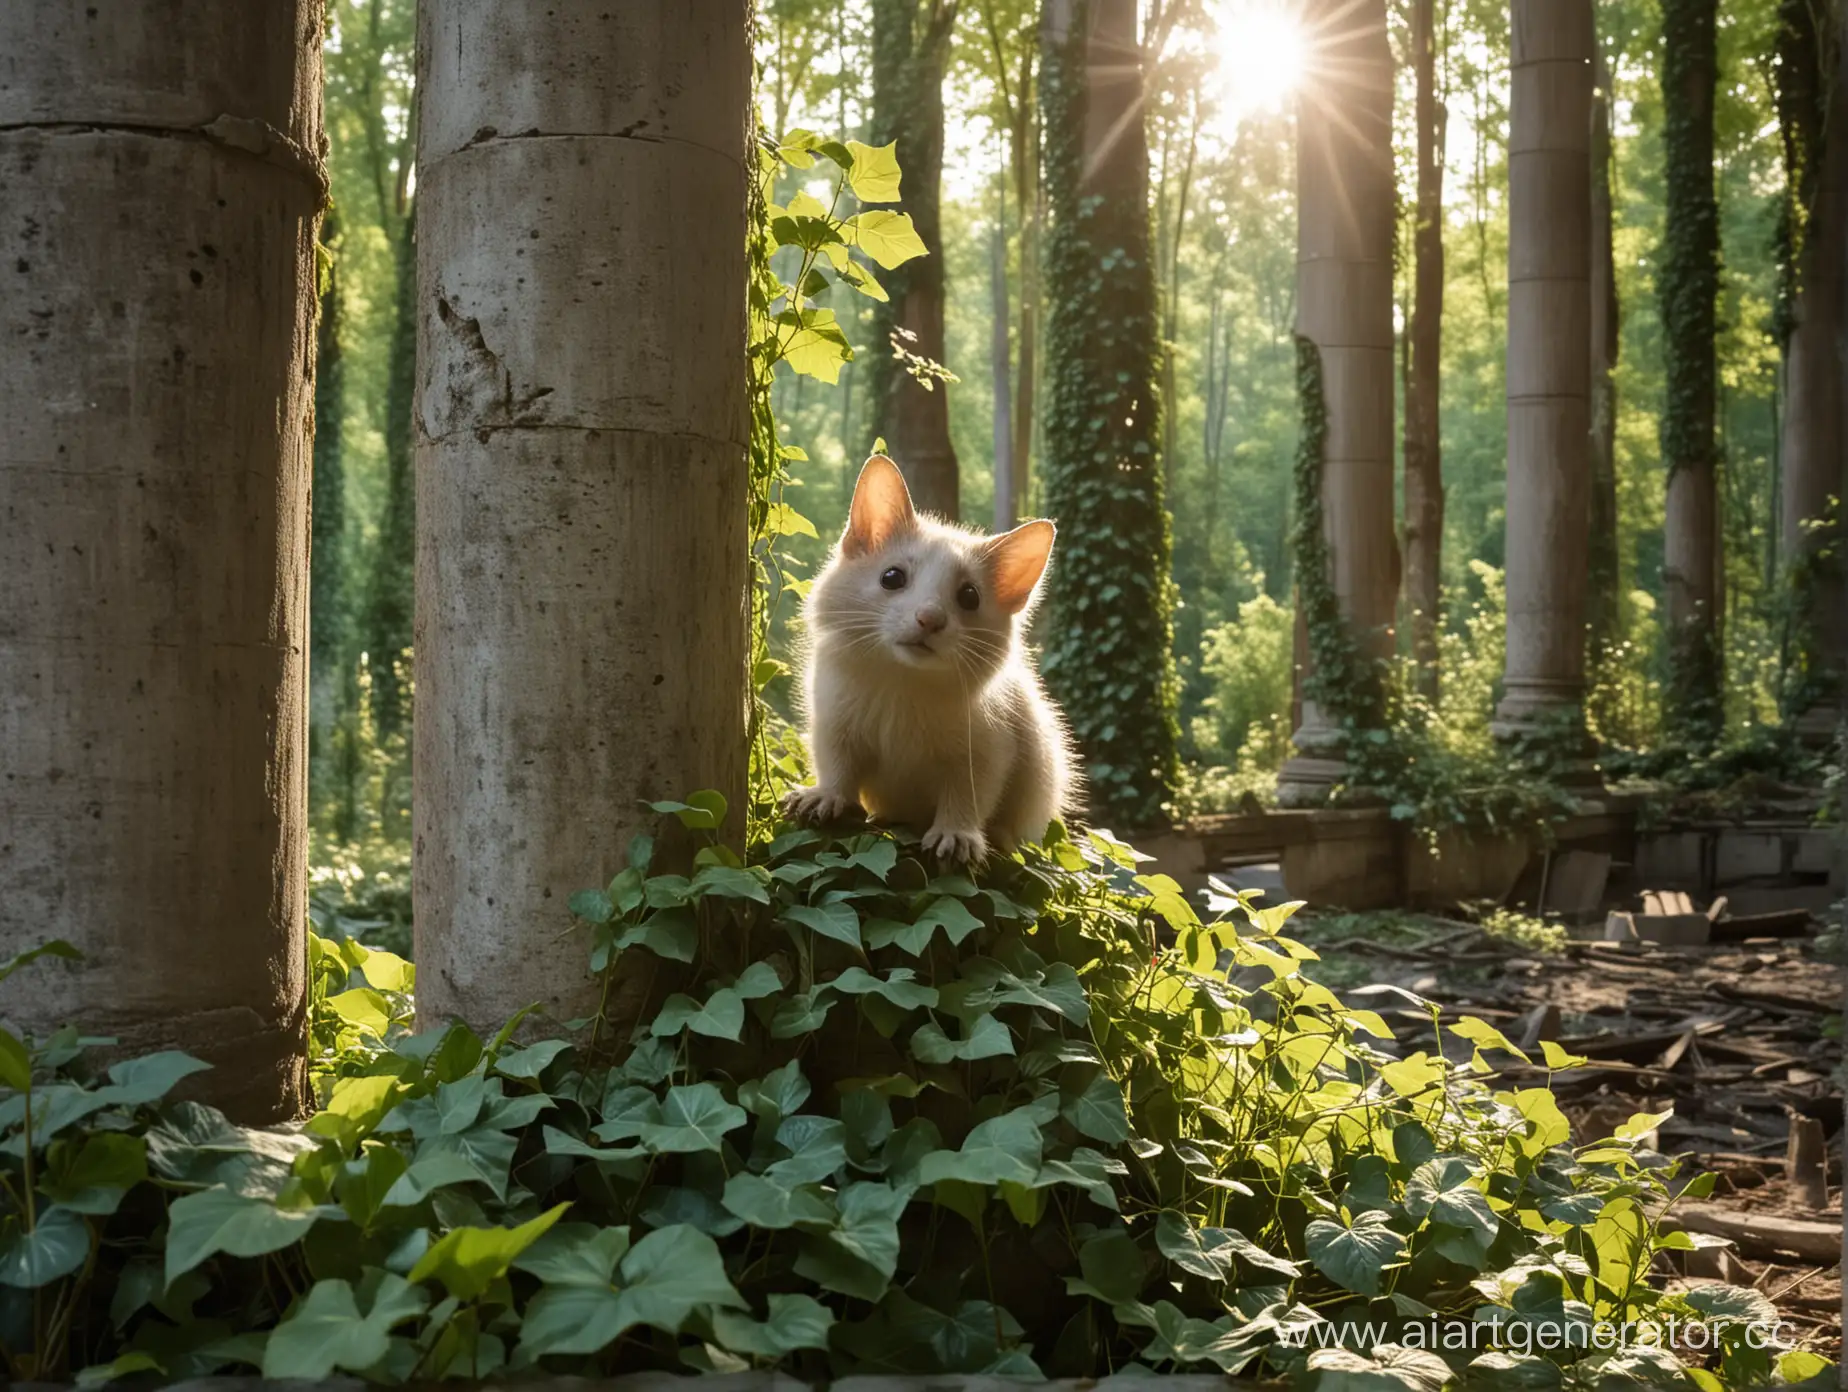 необычное милое существо выглядывает из-за полуразрушенных колонн, вокруг лес, колонны обвиты плющом, видны лучи солнца 